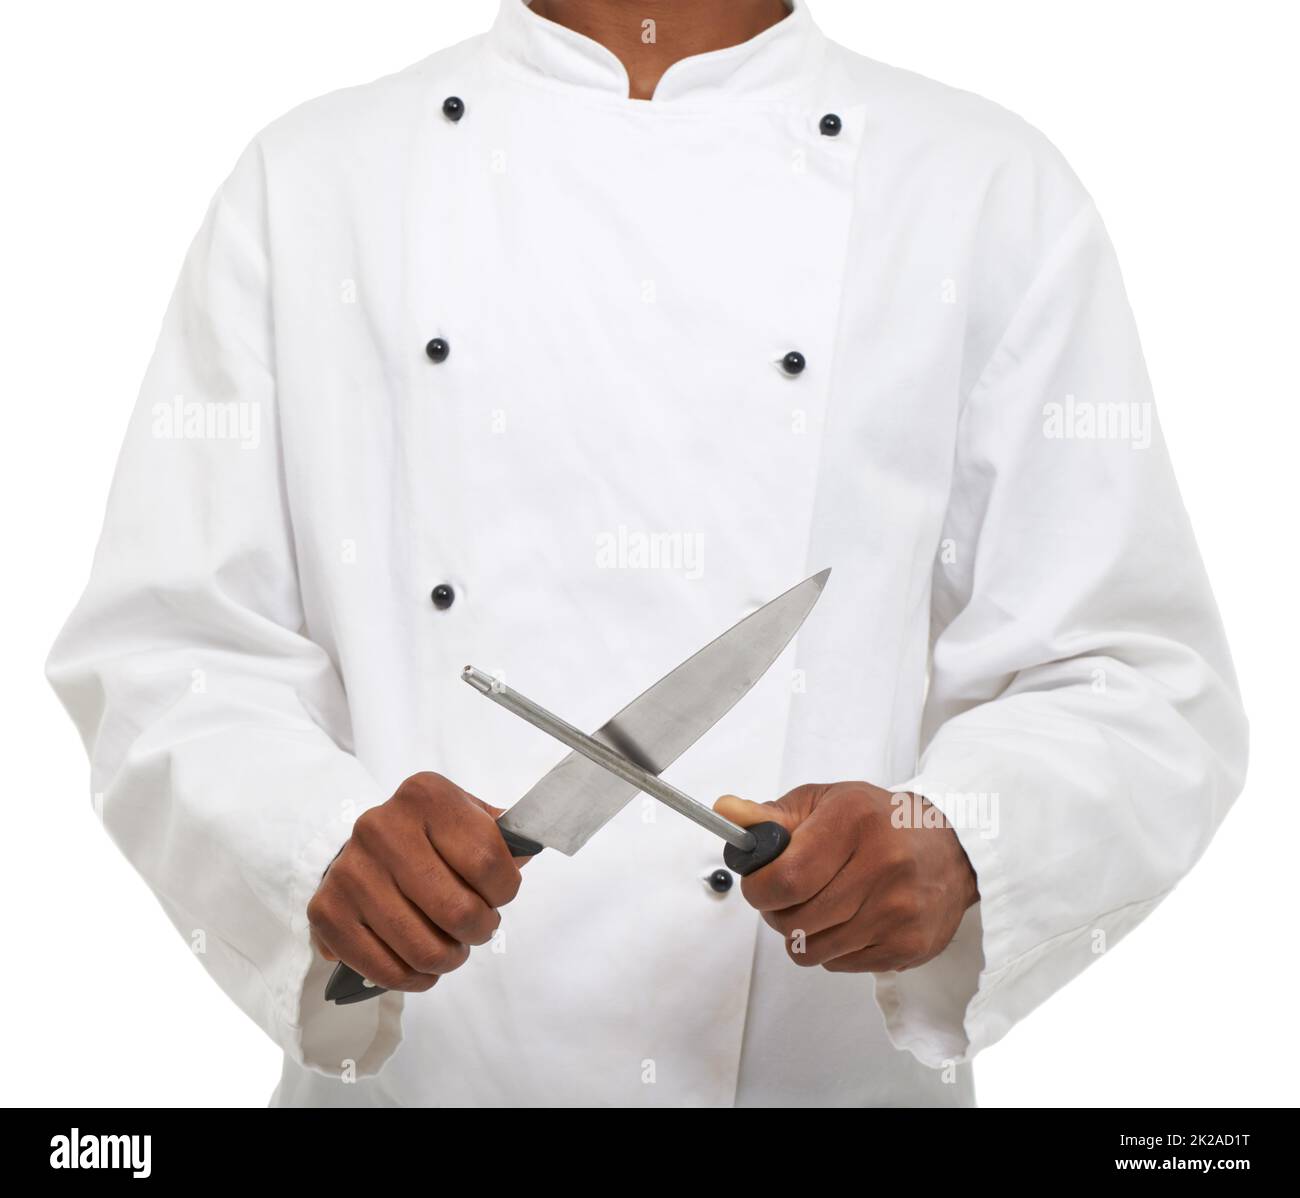 Outils du commerce. Un jeune chef aiguisant ses couteaux tout en étant isolé sur un fond blanc. Banque D'Images